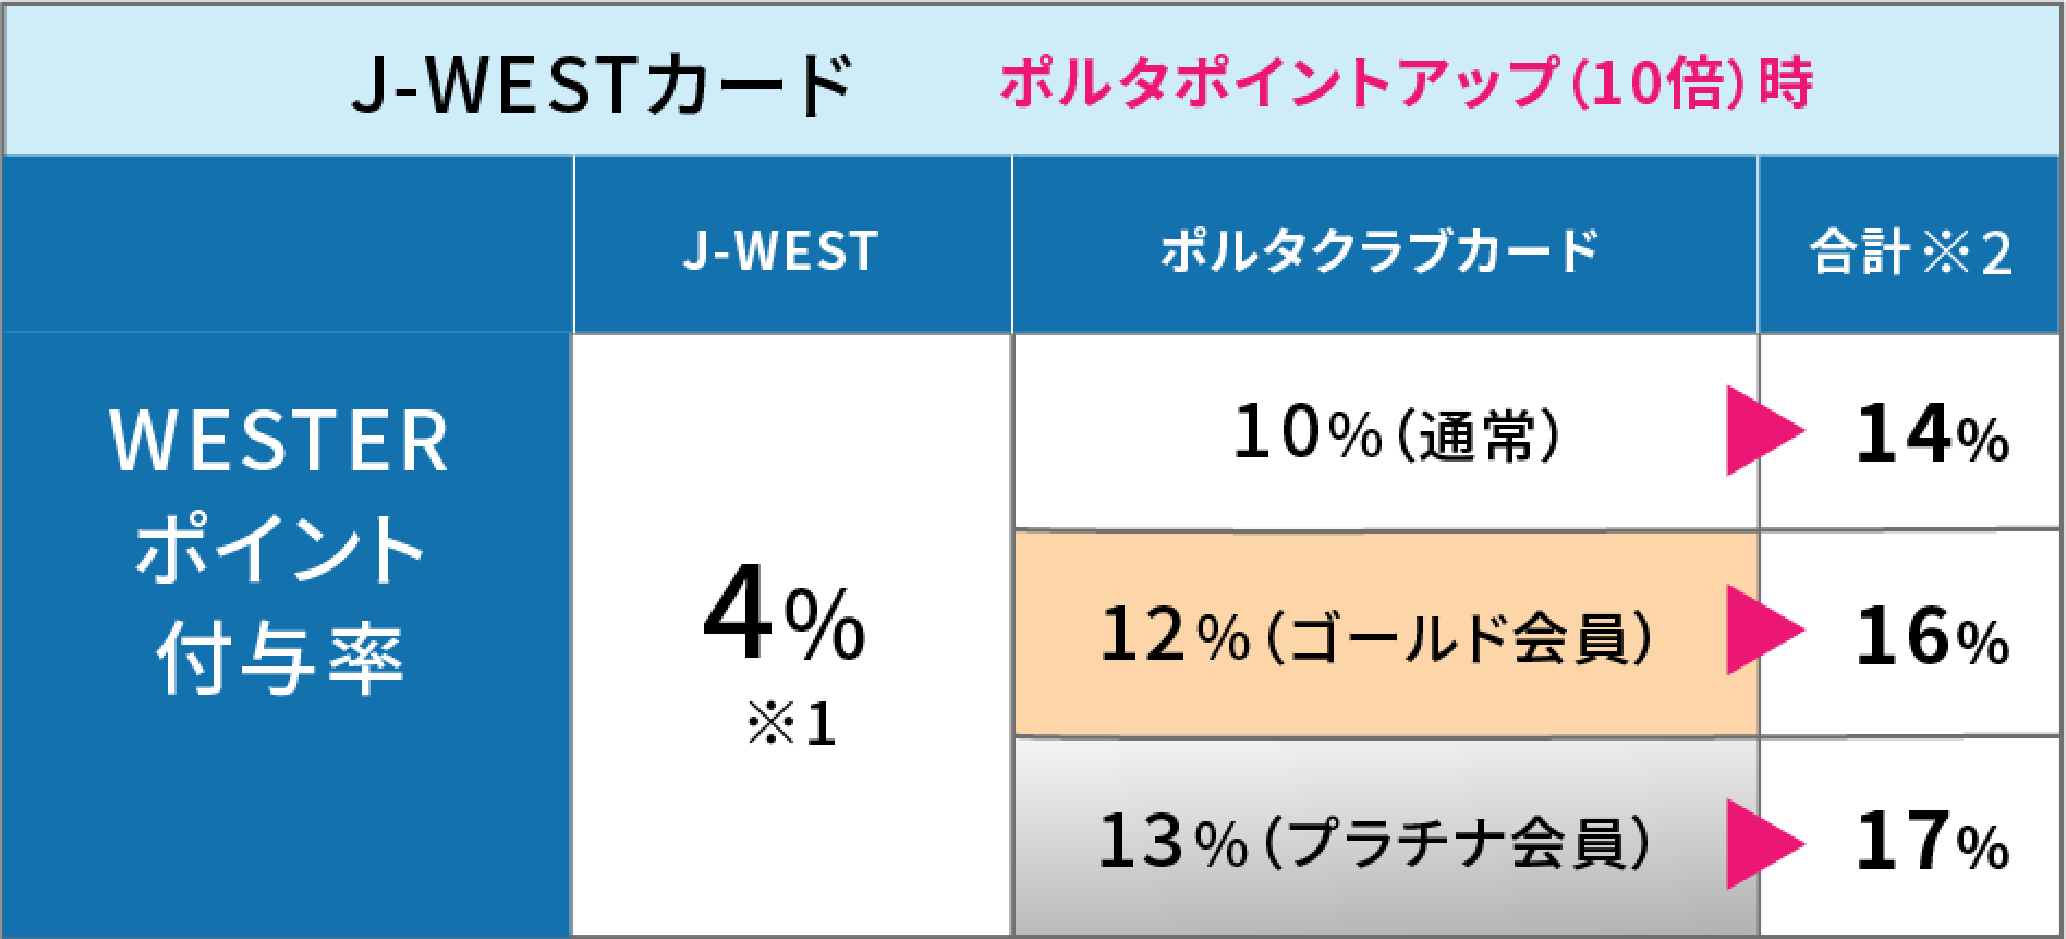 J-WESTカード(ポルタポイント10倍時) WESTERポイント付与率 J-WEST4% ポルタクラブ会員カードでさらに10〜13% 合計14〜17%